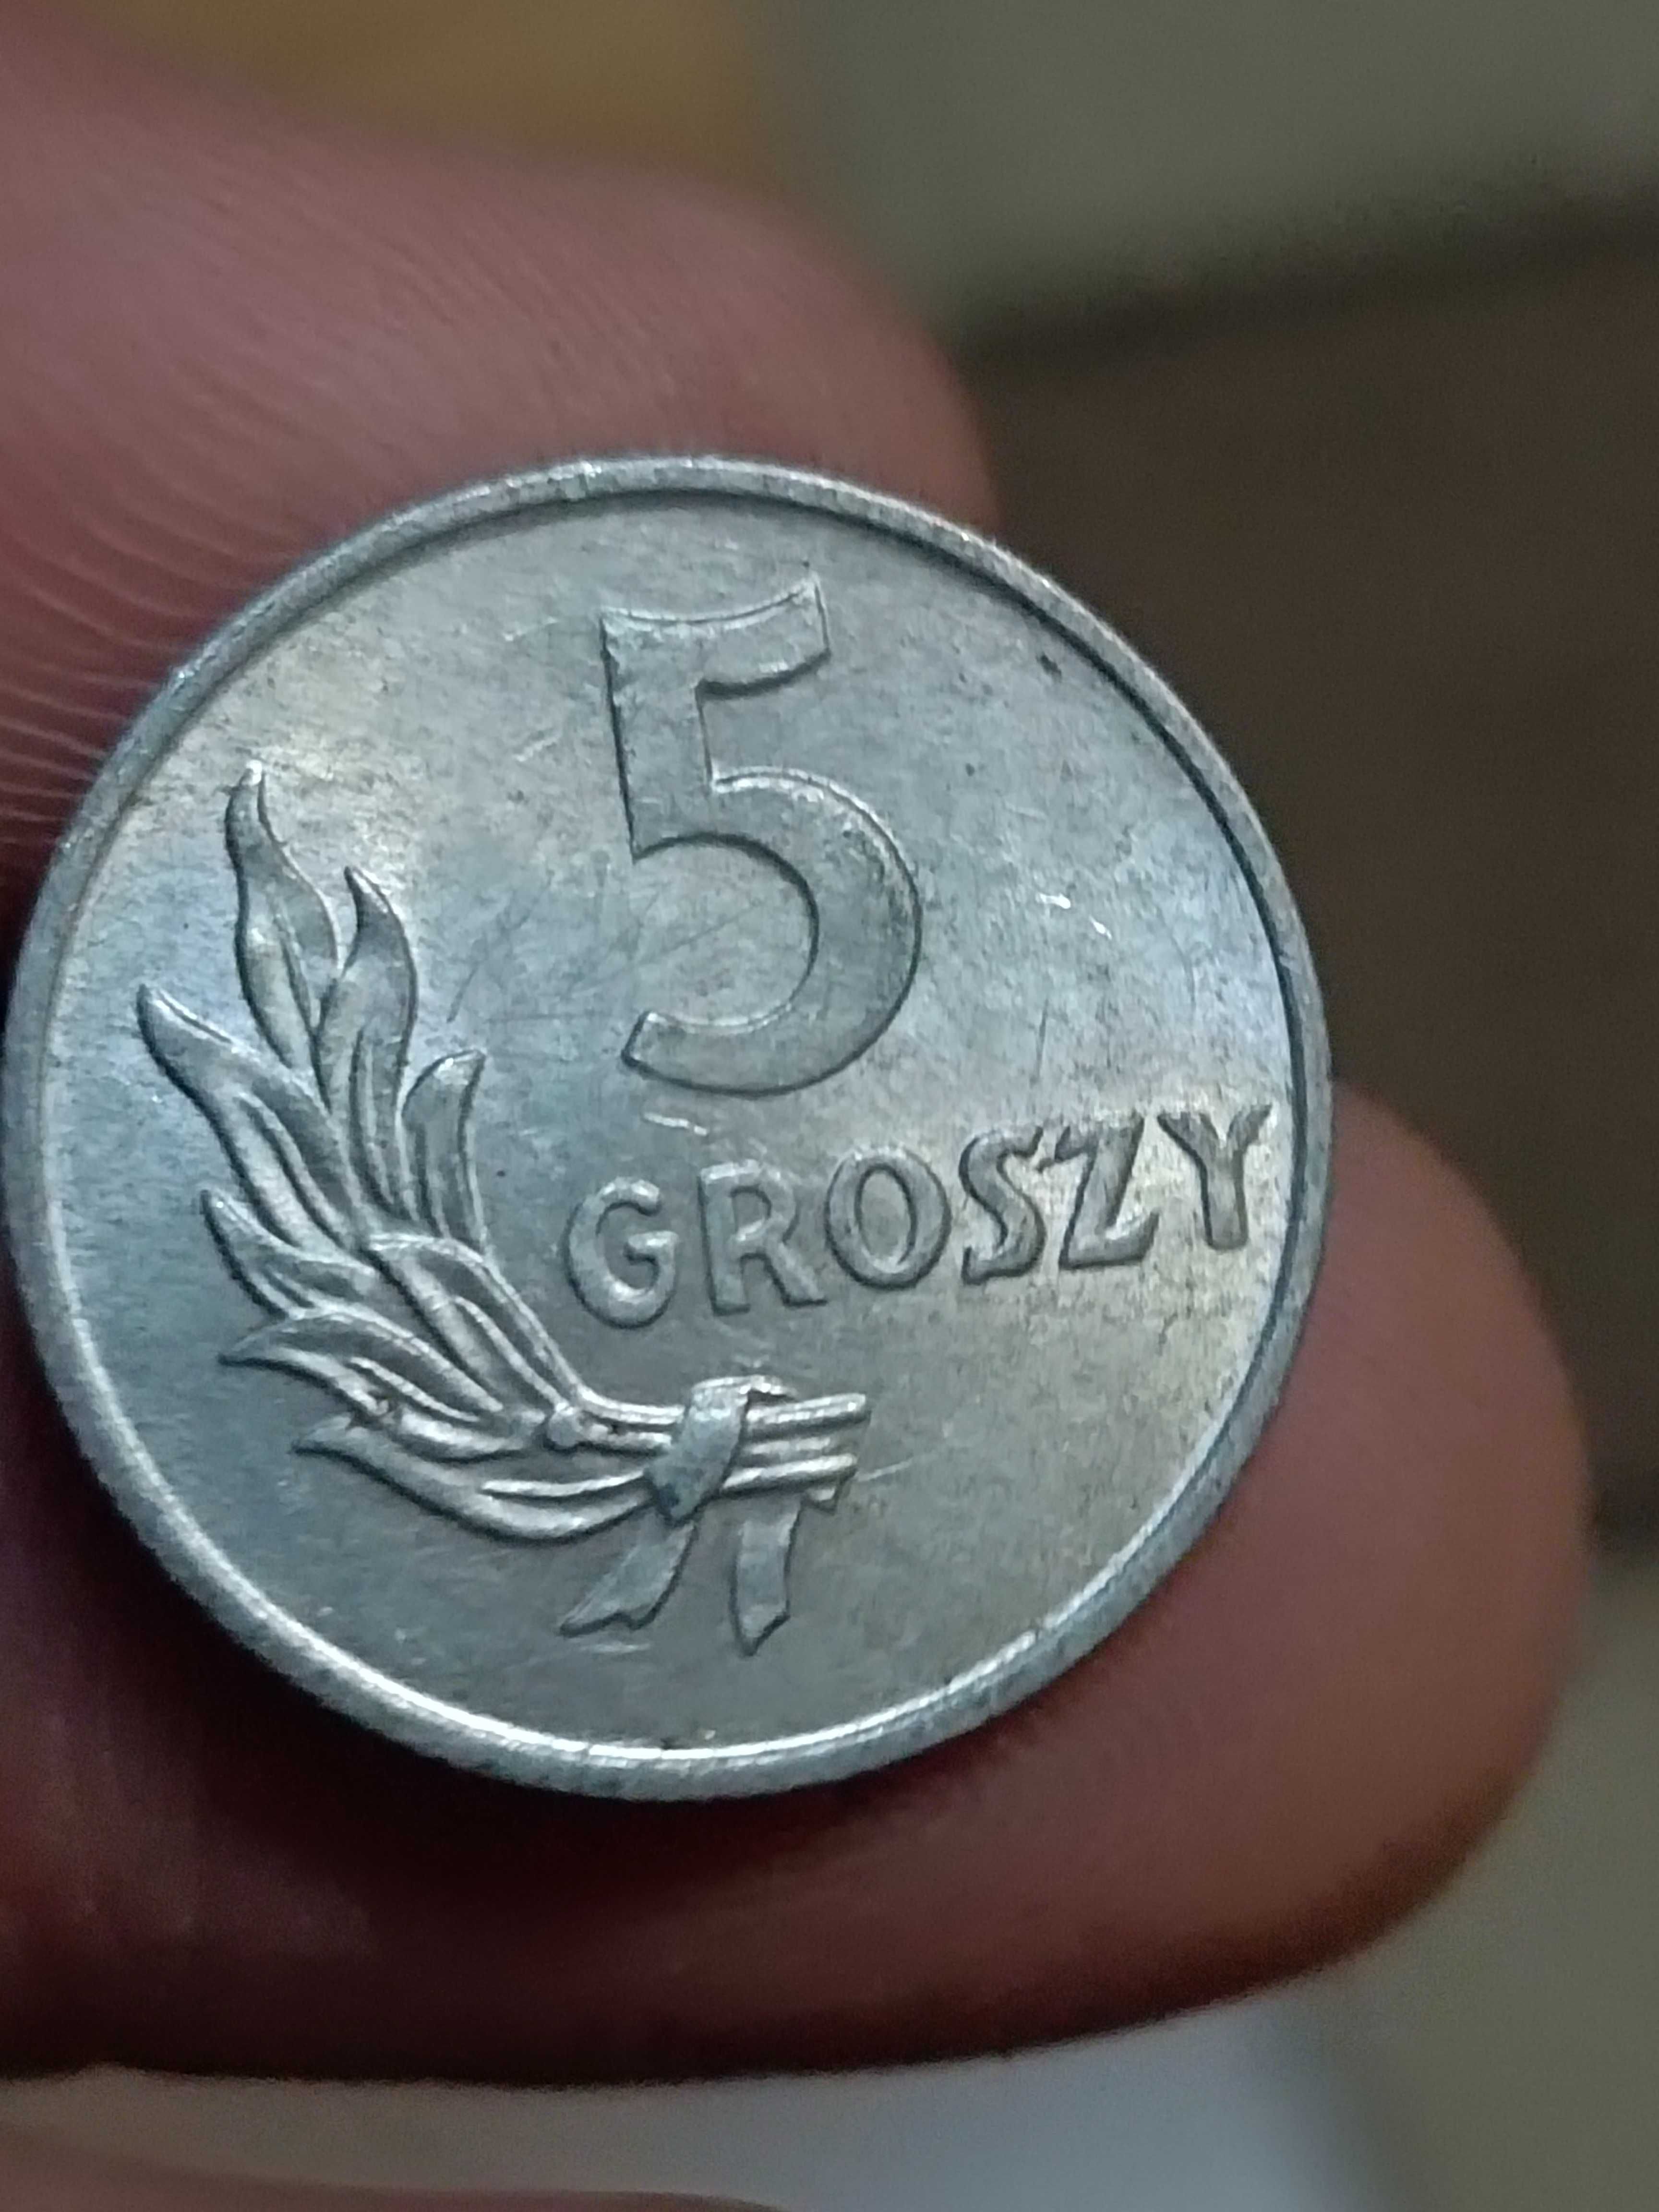 Sprzedam monete 5 gr 1949 r bzm